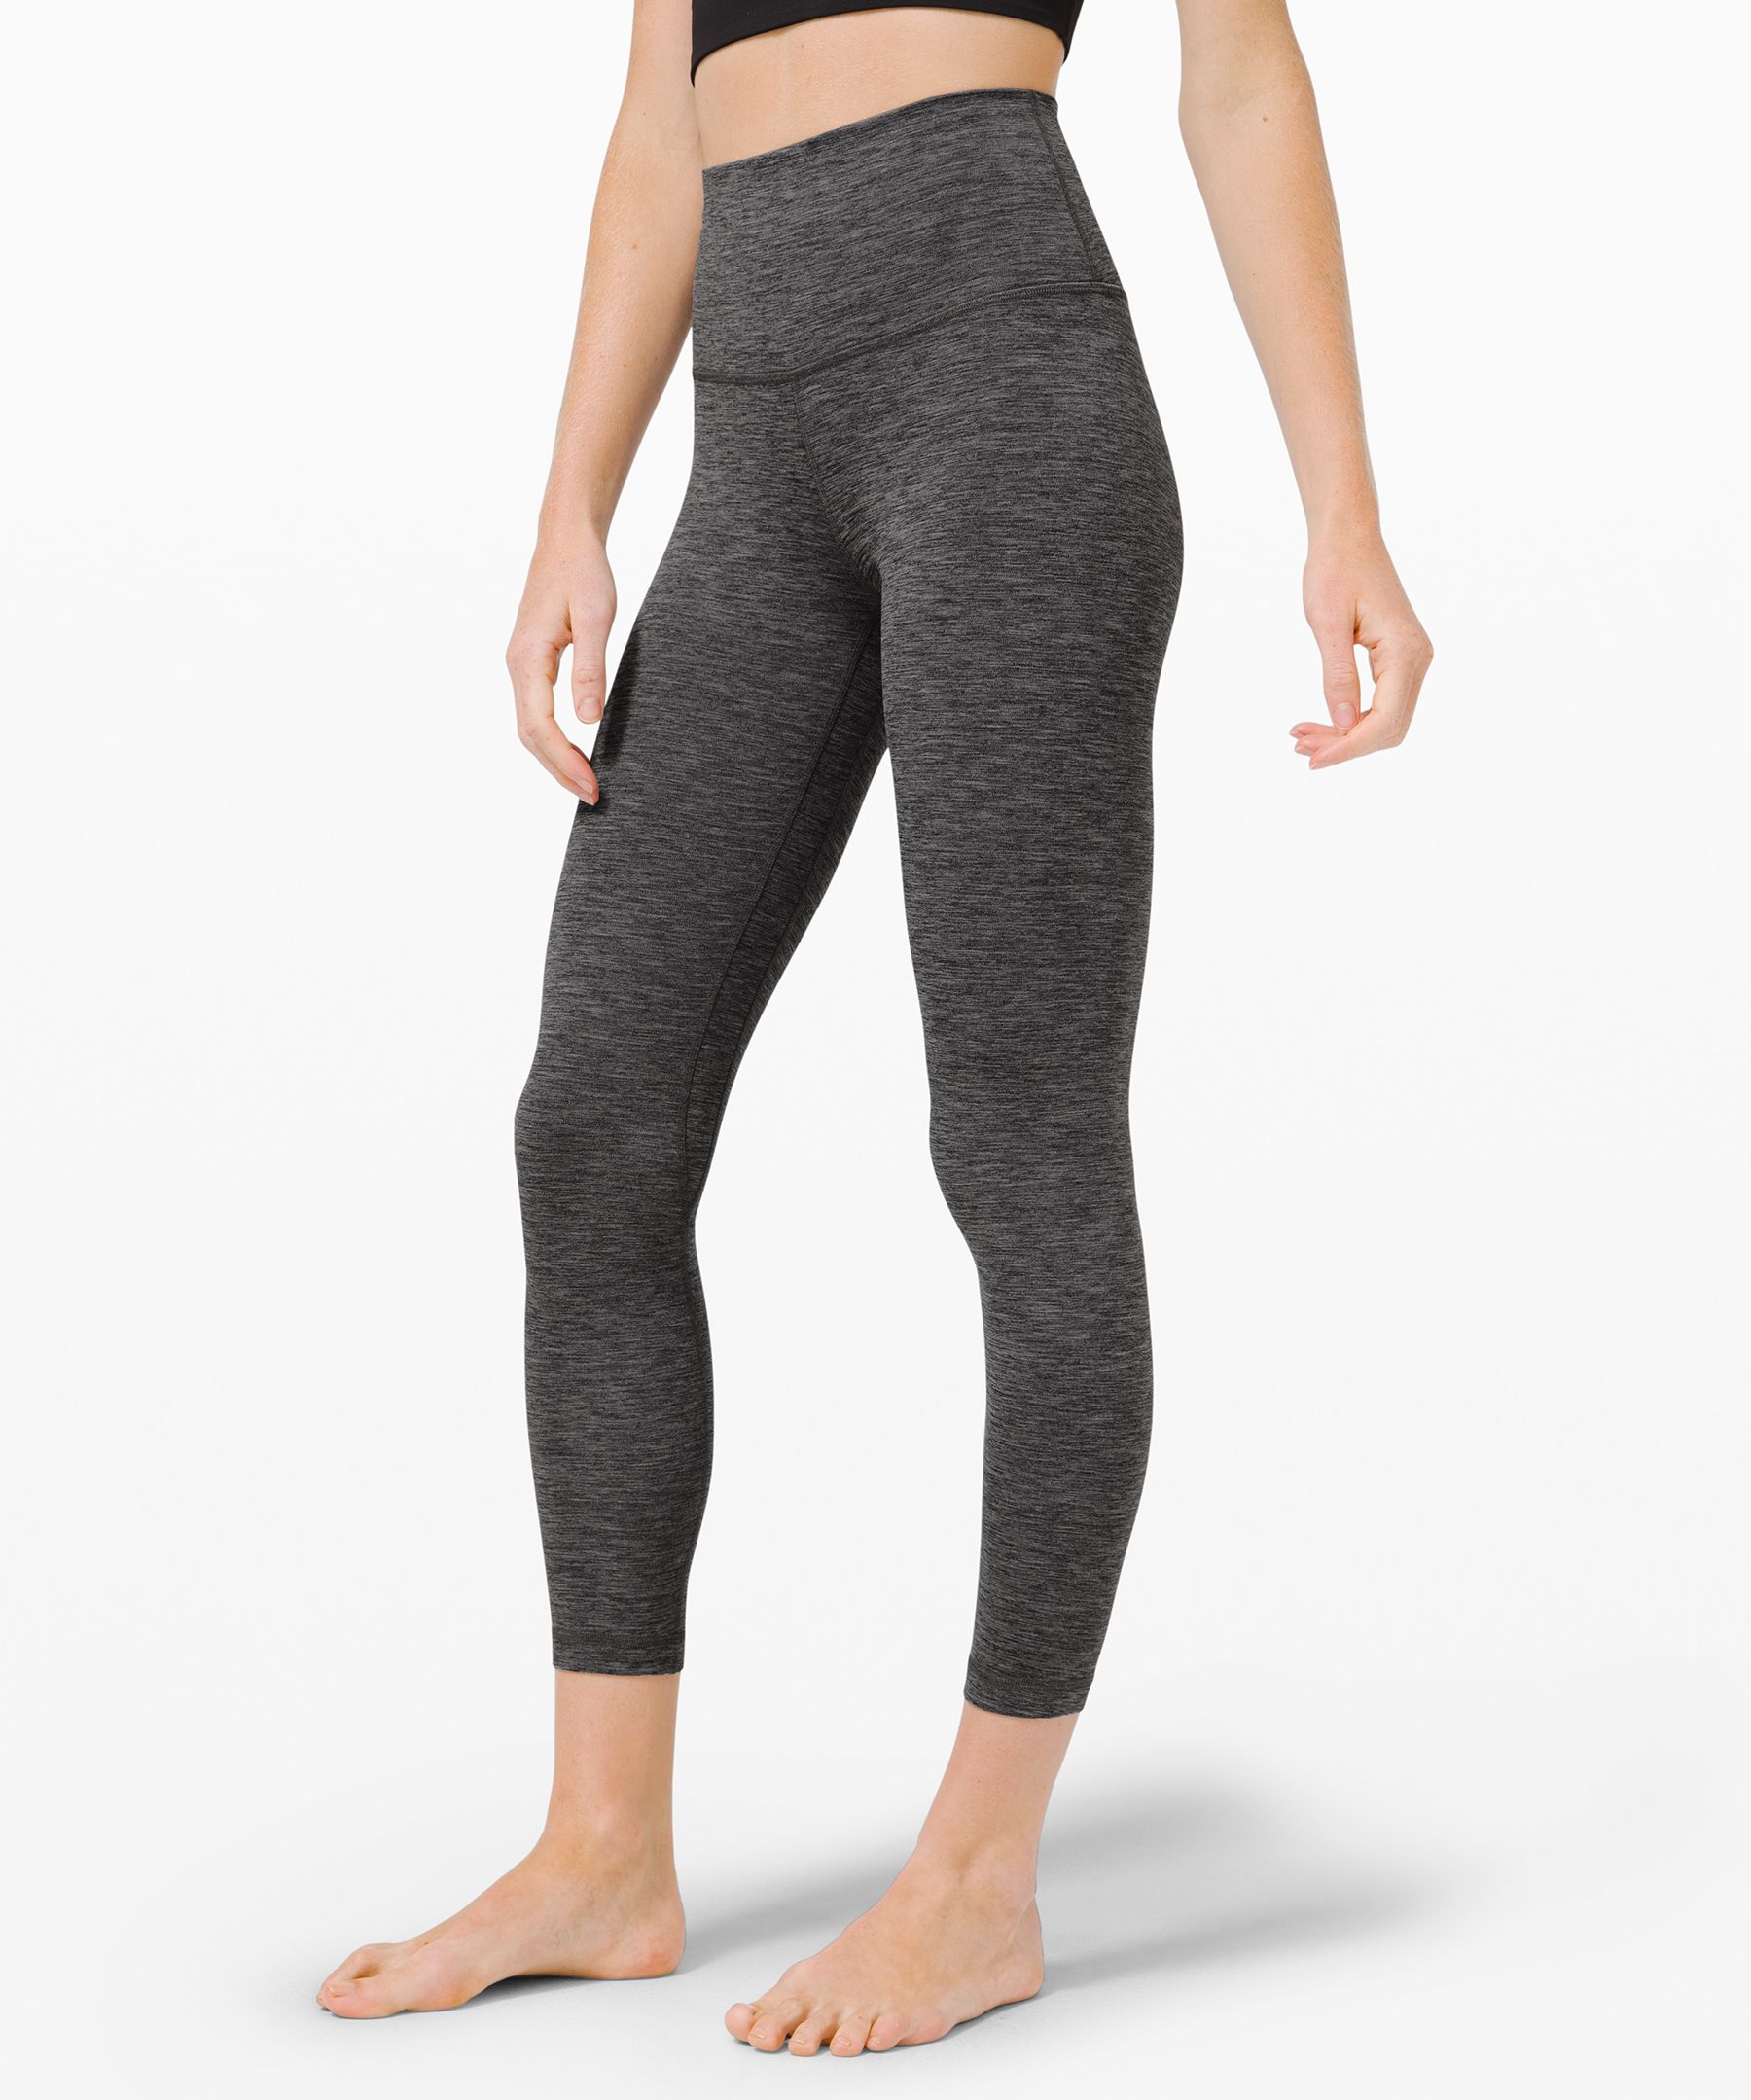 gray lululemon leggings